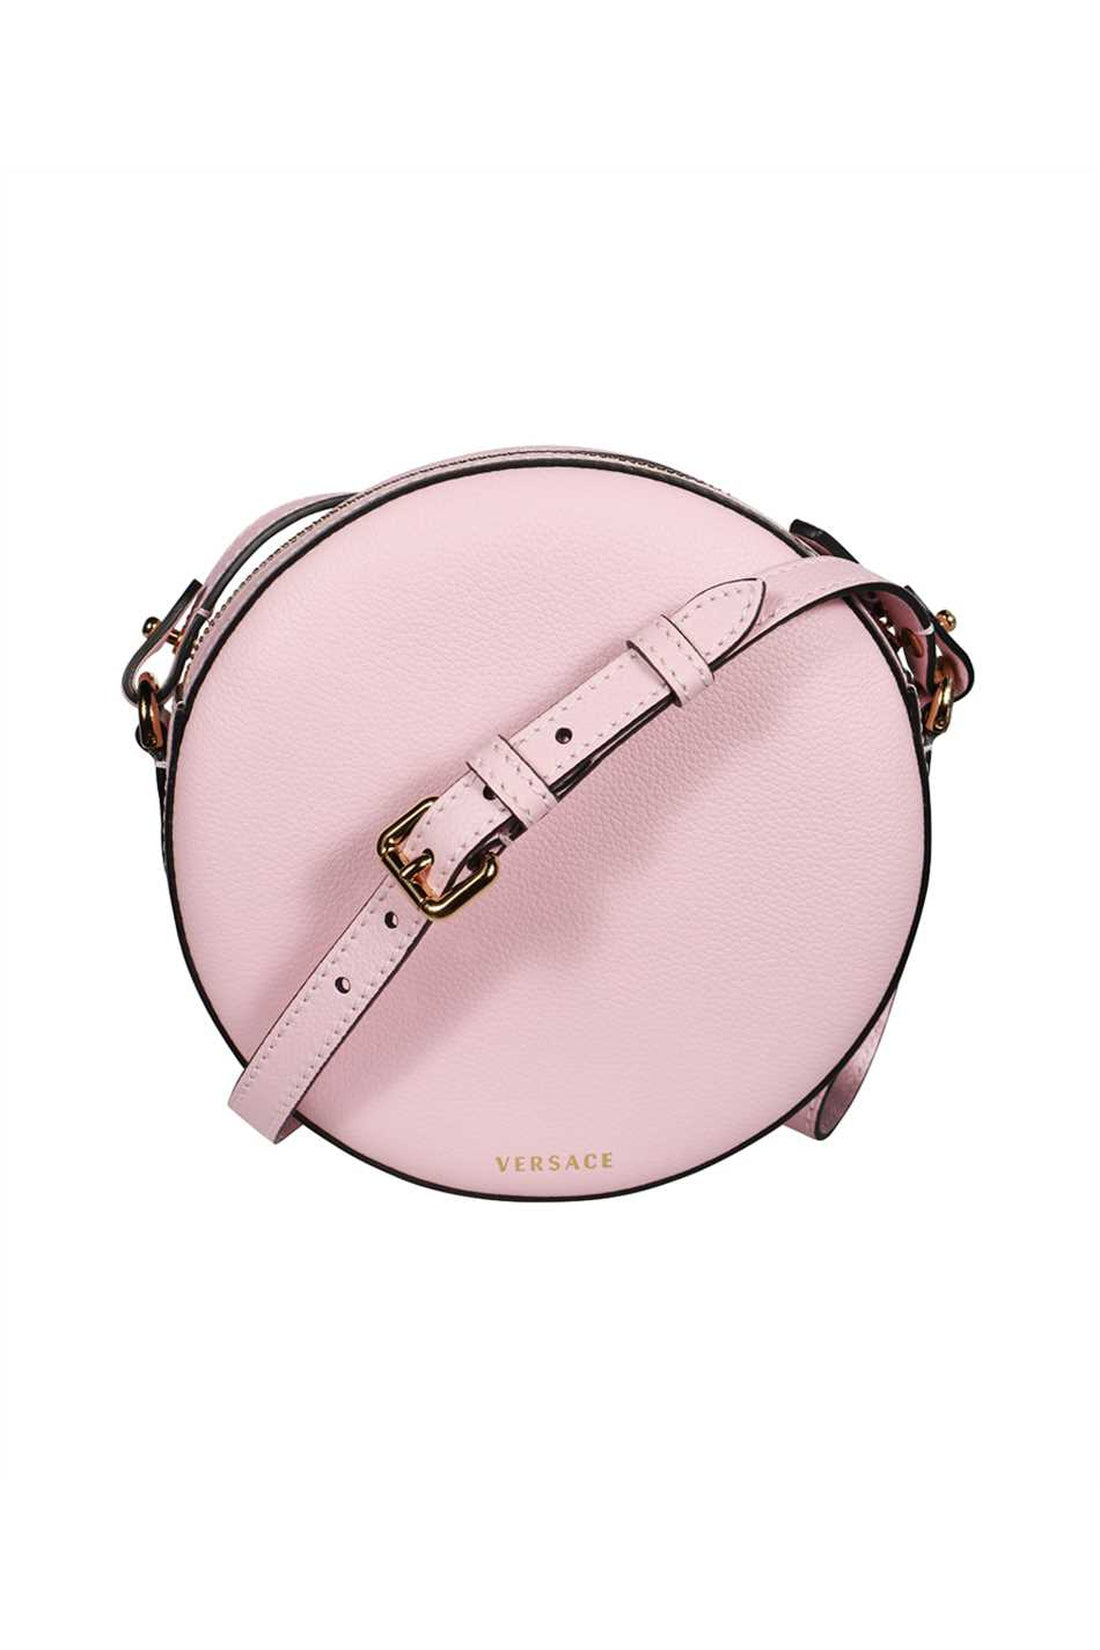 Versace-OUTLET-SALE-La Medusa leather camera bag-ARCHIVIST